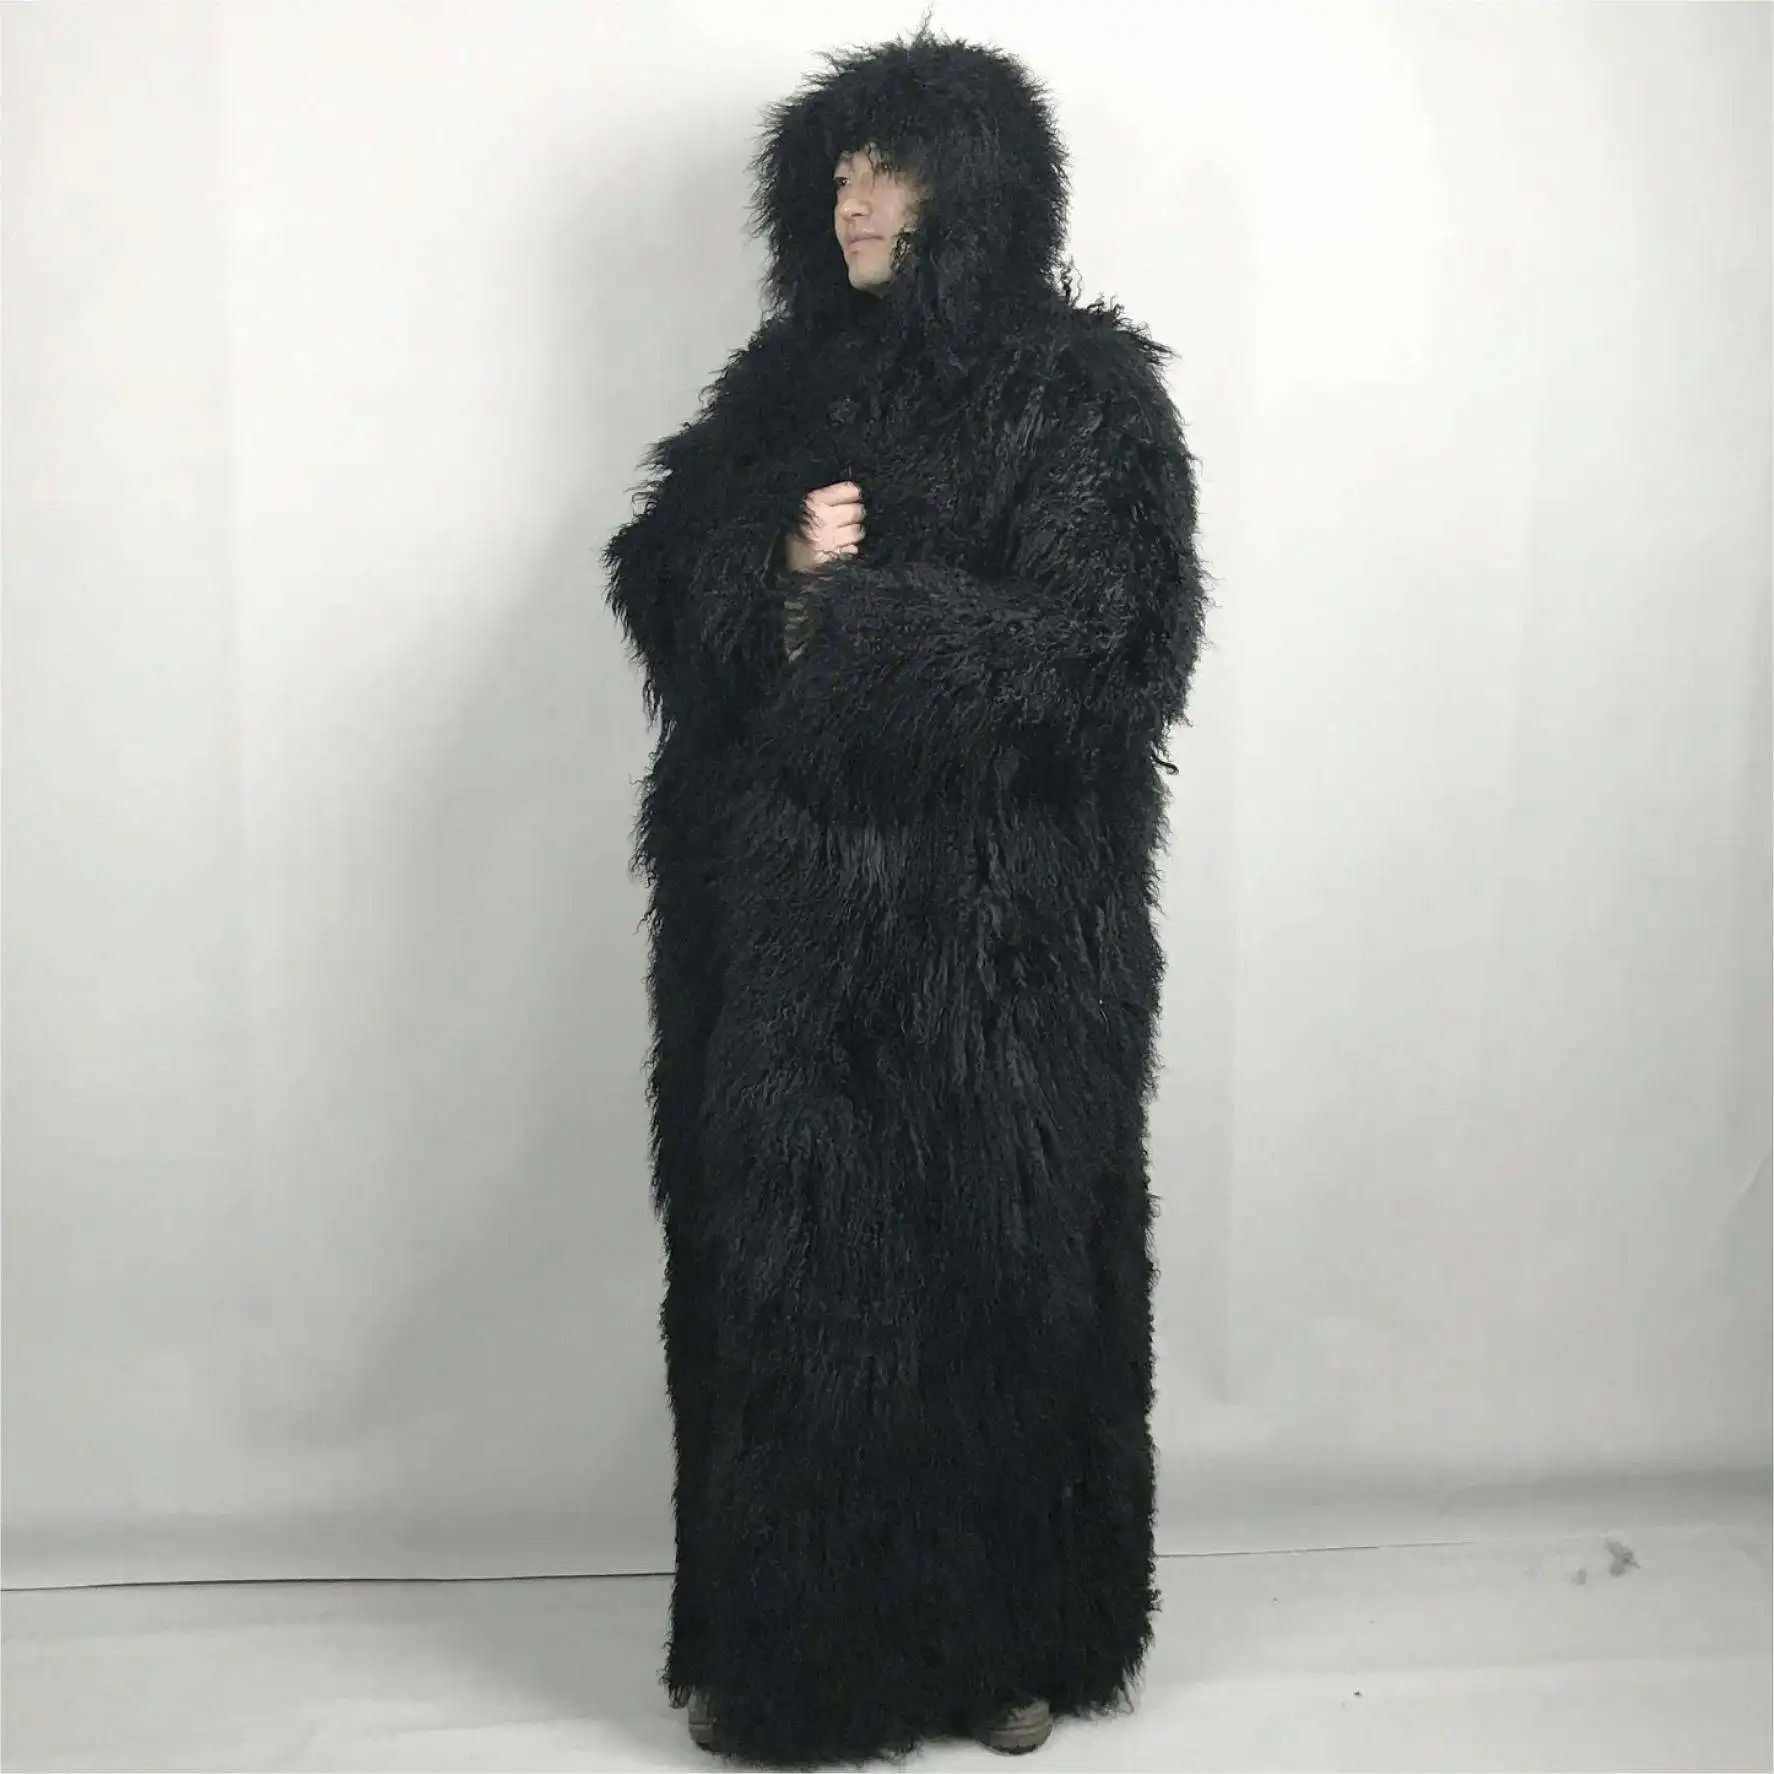 62 inç diz boyu kapşonlu erkekler moğol kuzusu kürk manto ekstra uzun zemin uzunluğu moğol kuzusu kürk manto